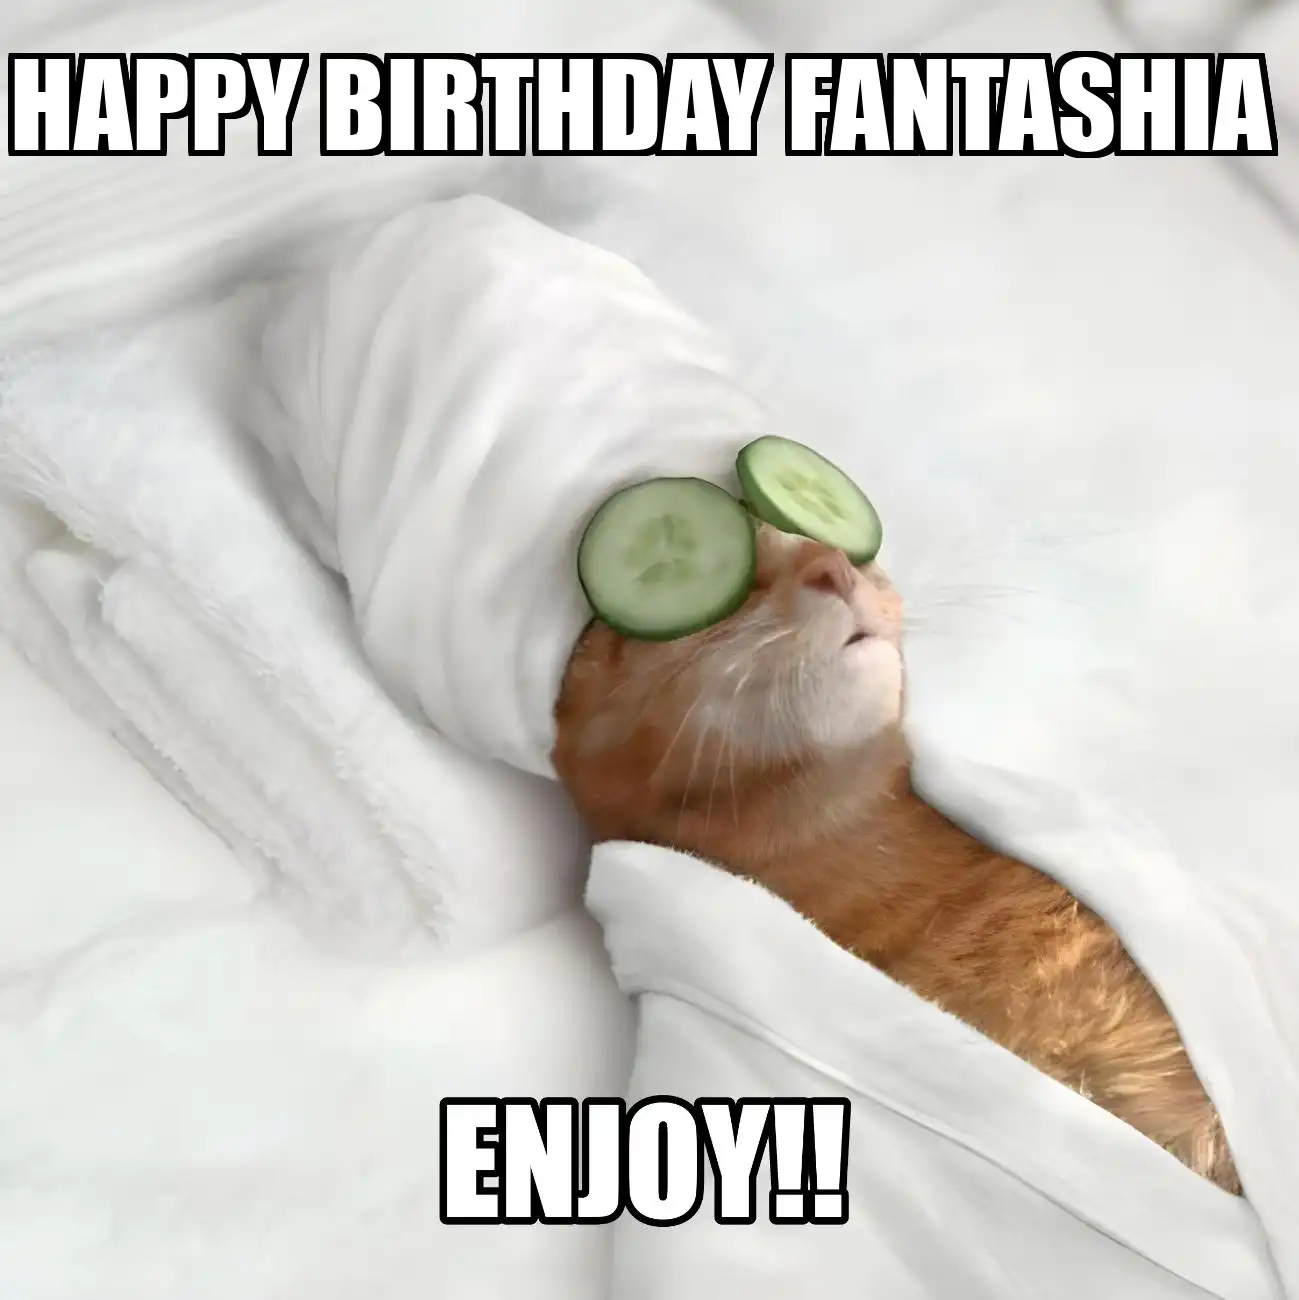 Happy Birthday Fantashia Enjoy Cat Meme